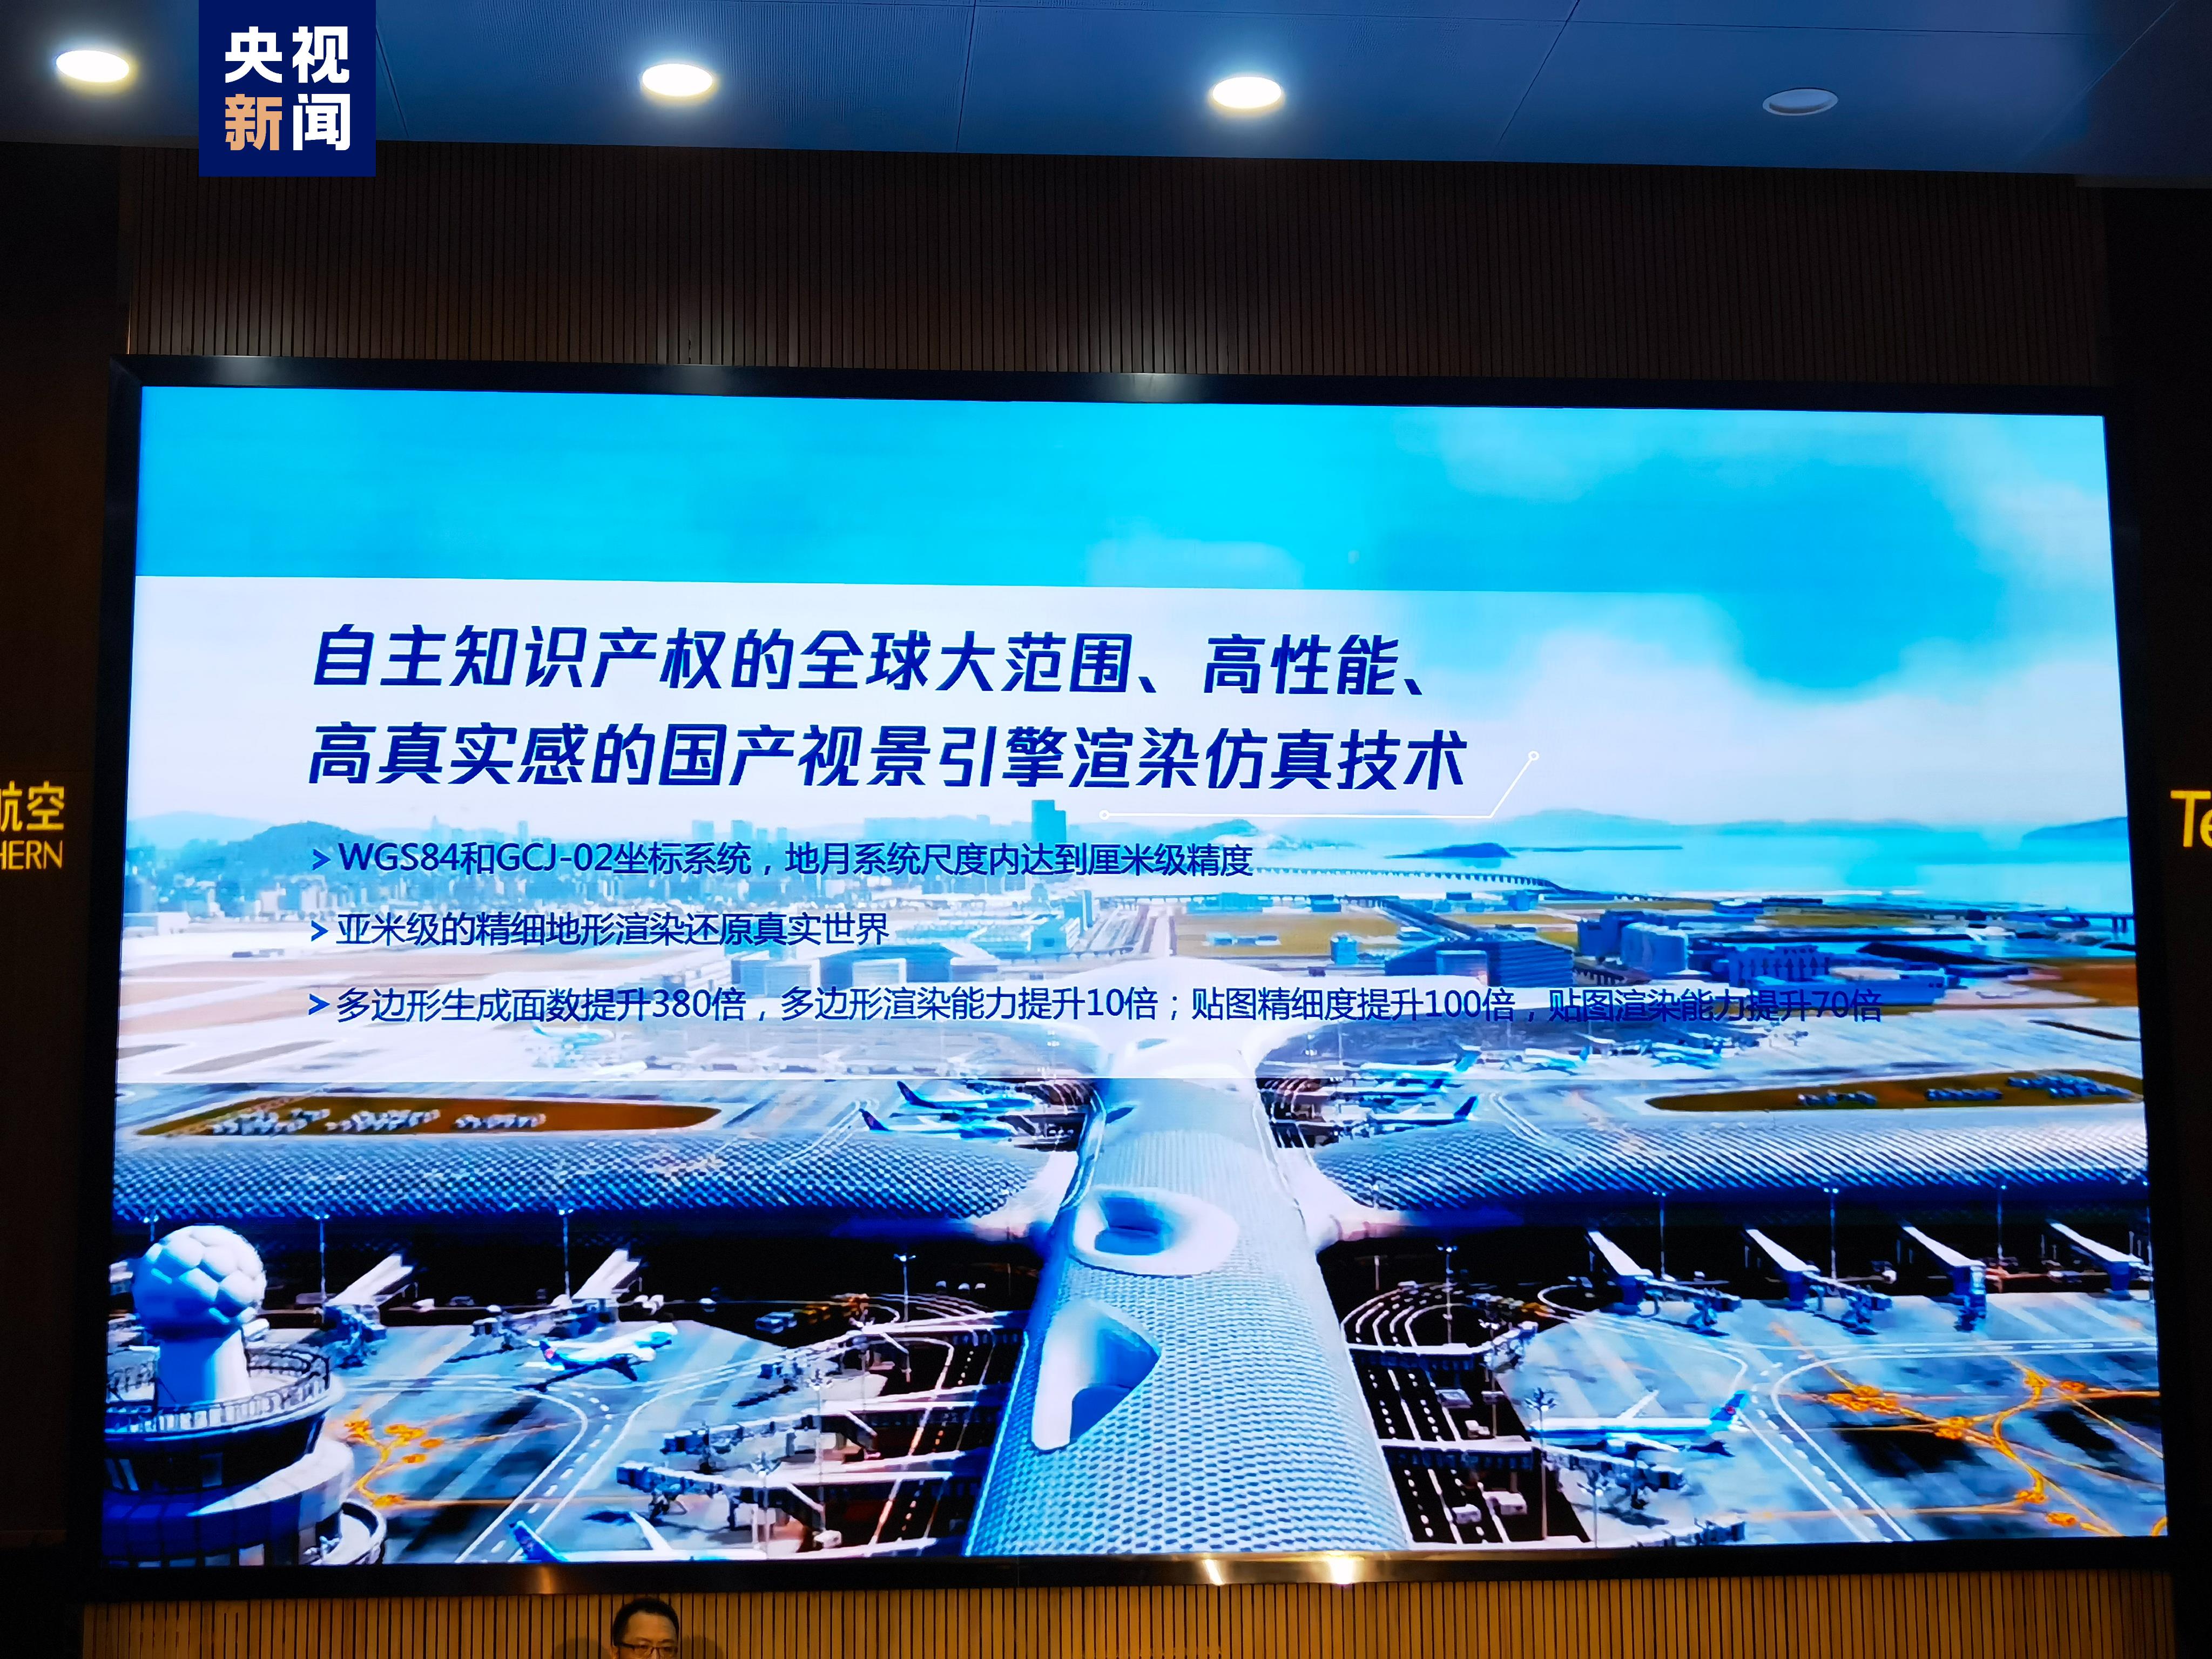 发布了中国首个自主研发的“全动飞行模拟机视觉系统”